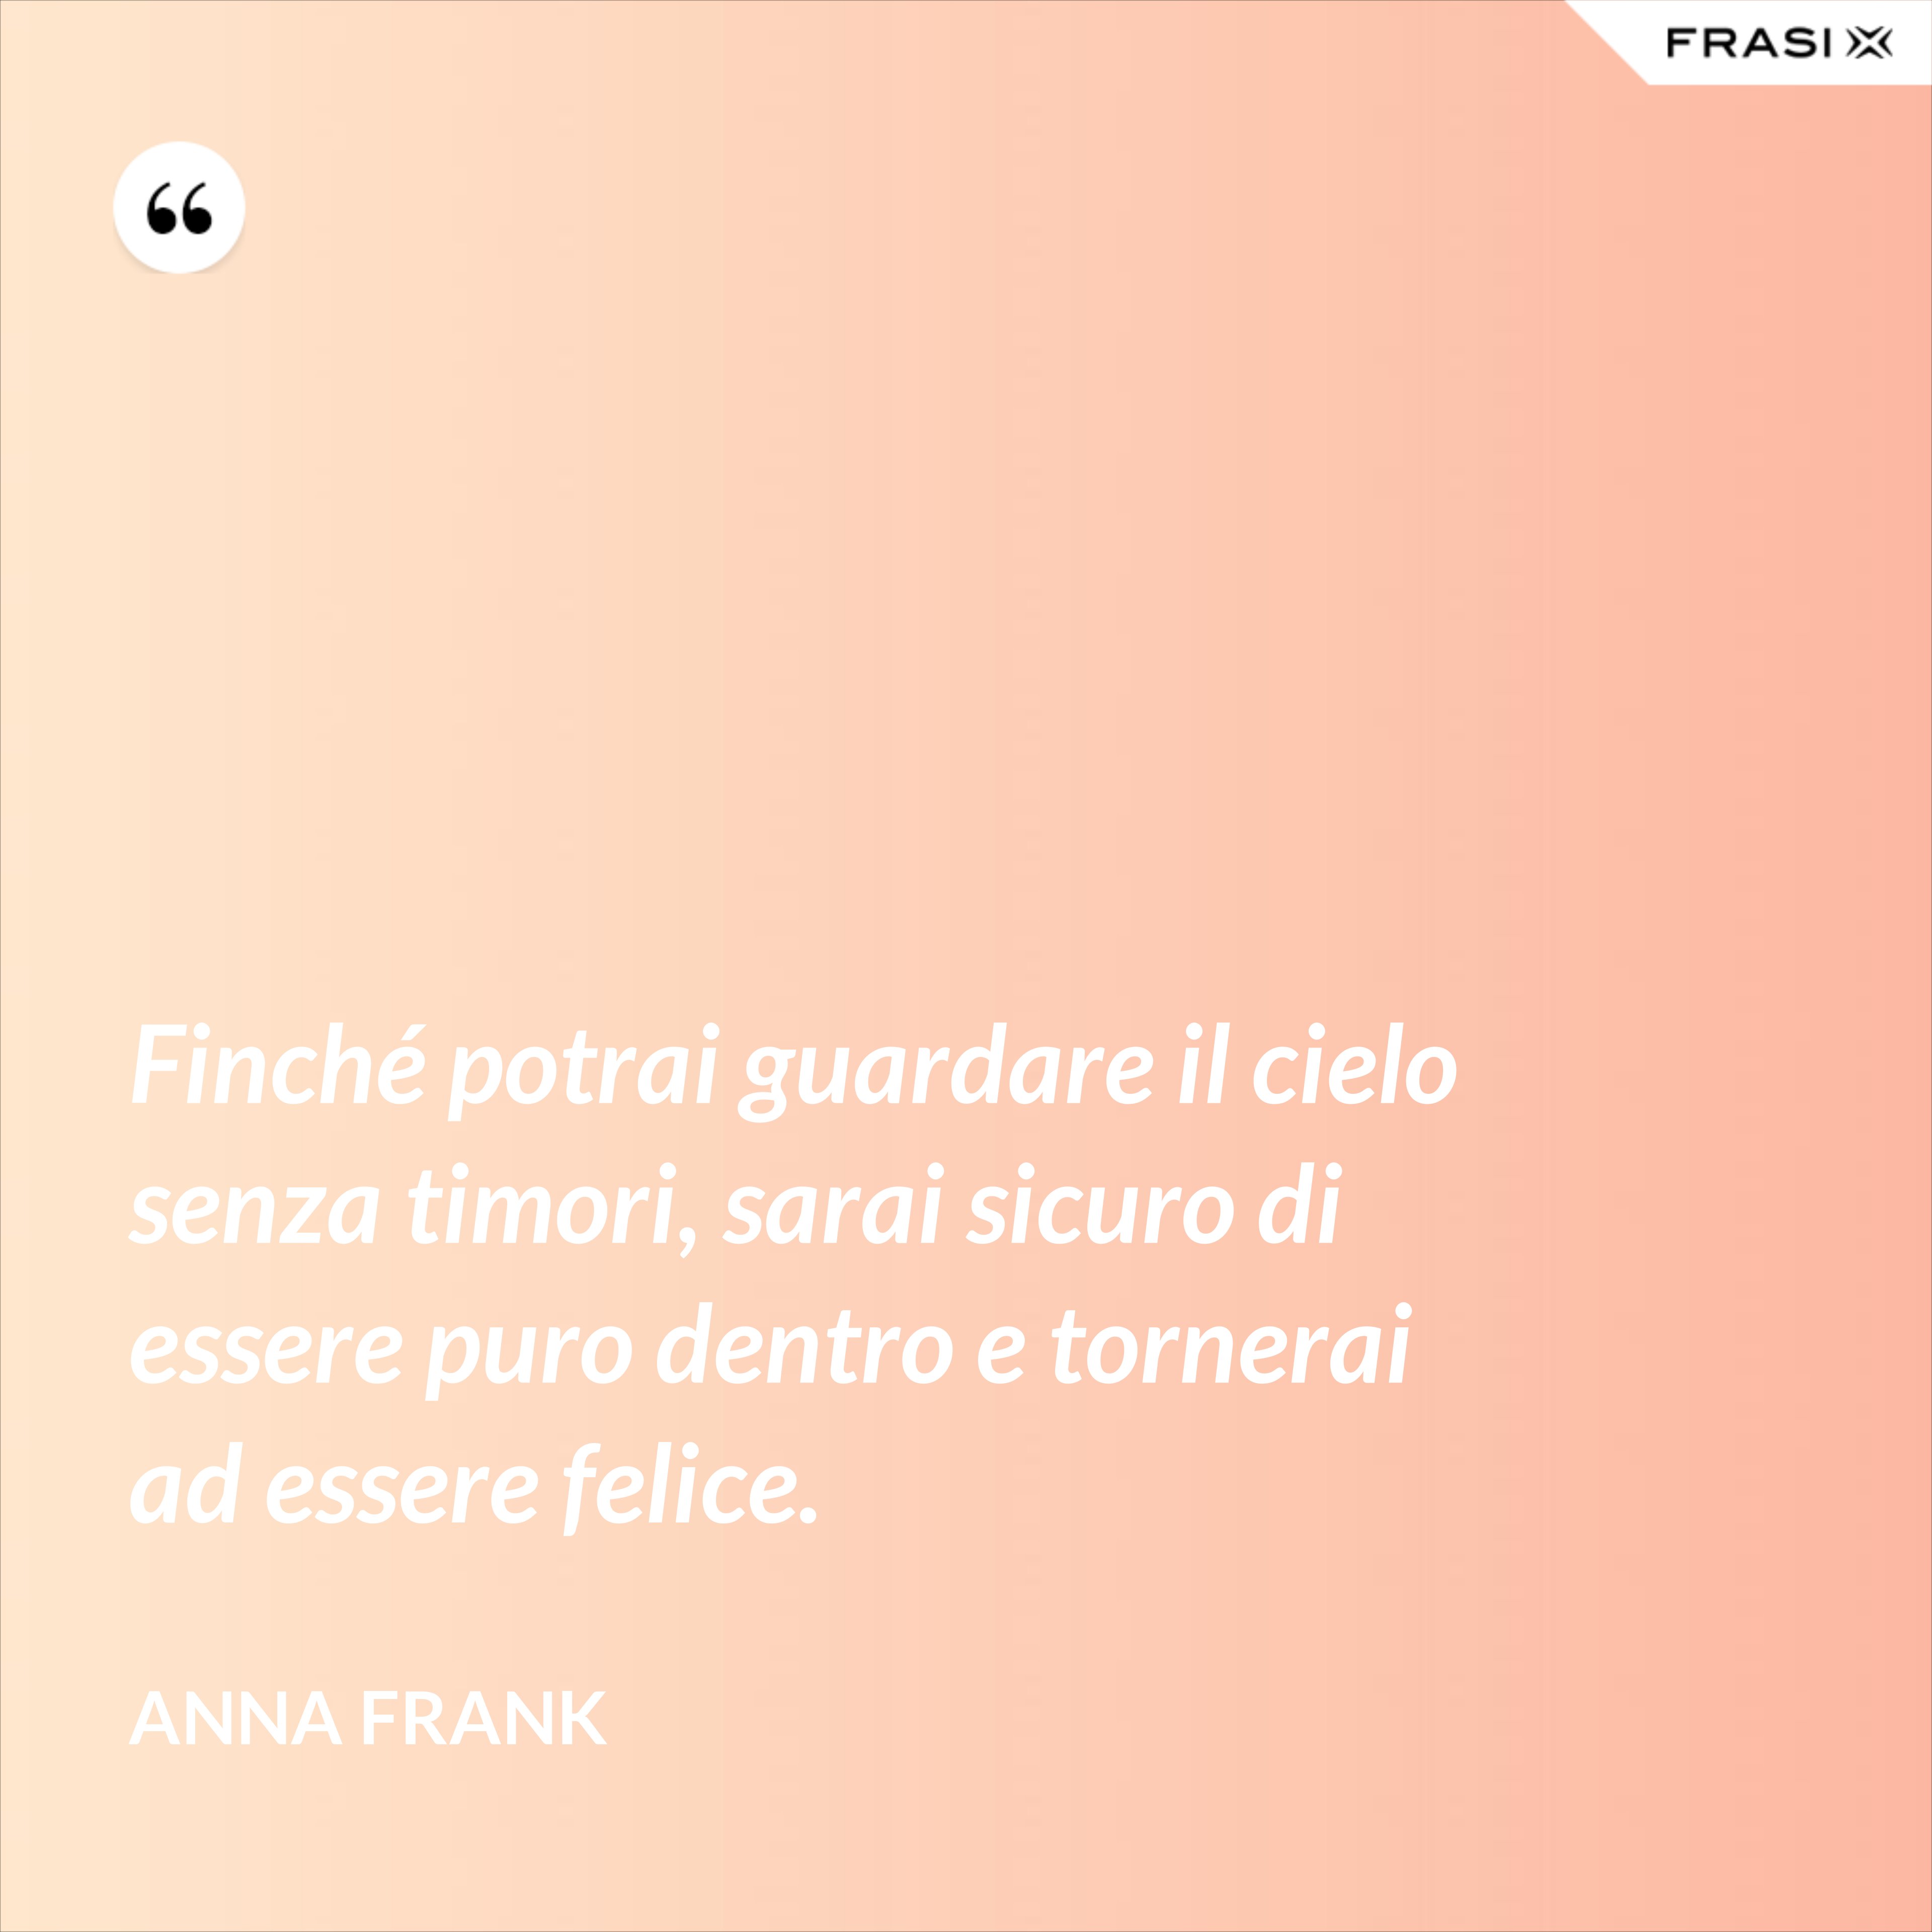 Finché potrai guardare il cielo senza timori, sarai sicuro di essere puro dentro e tornerai ad essere felice. - Anna Frank